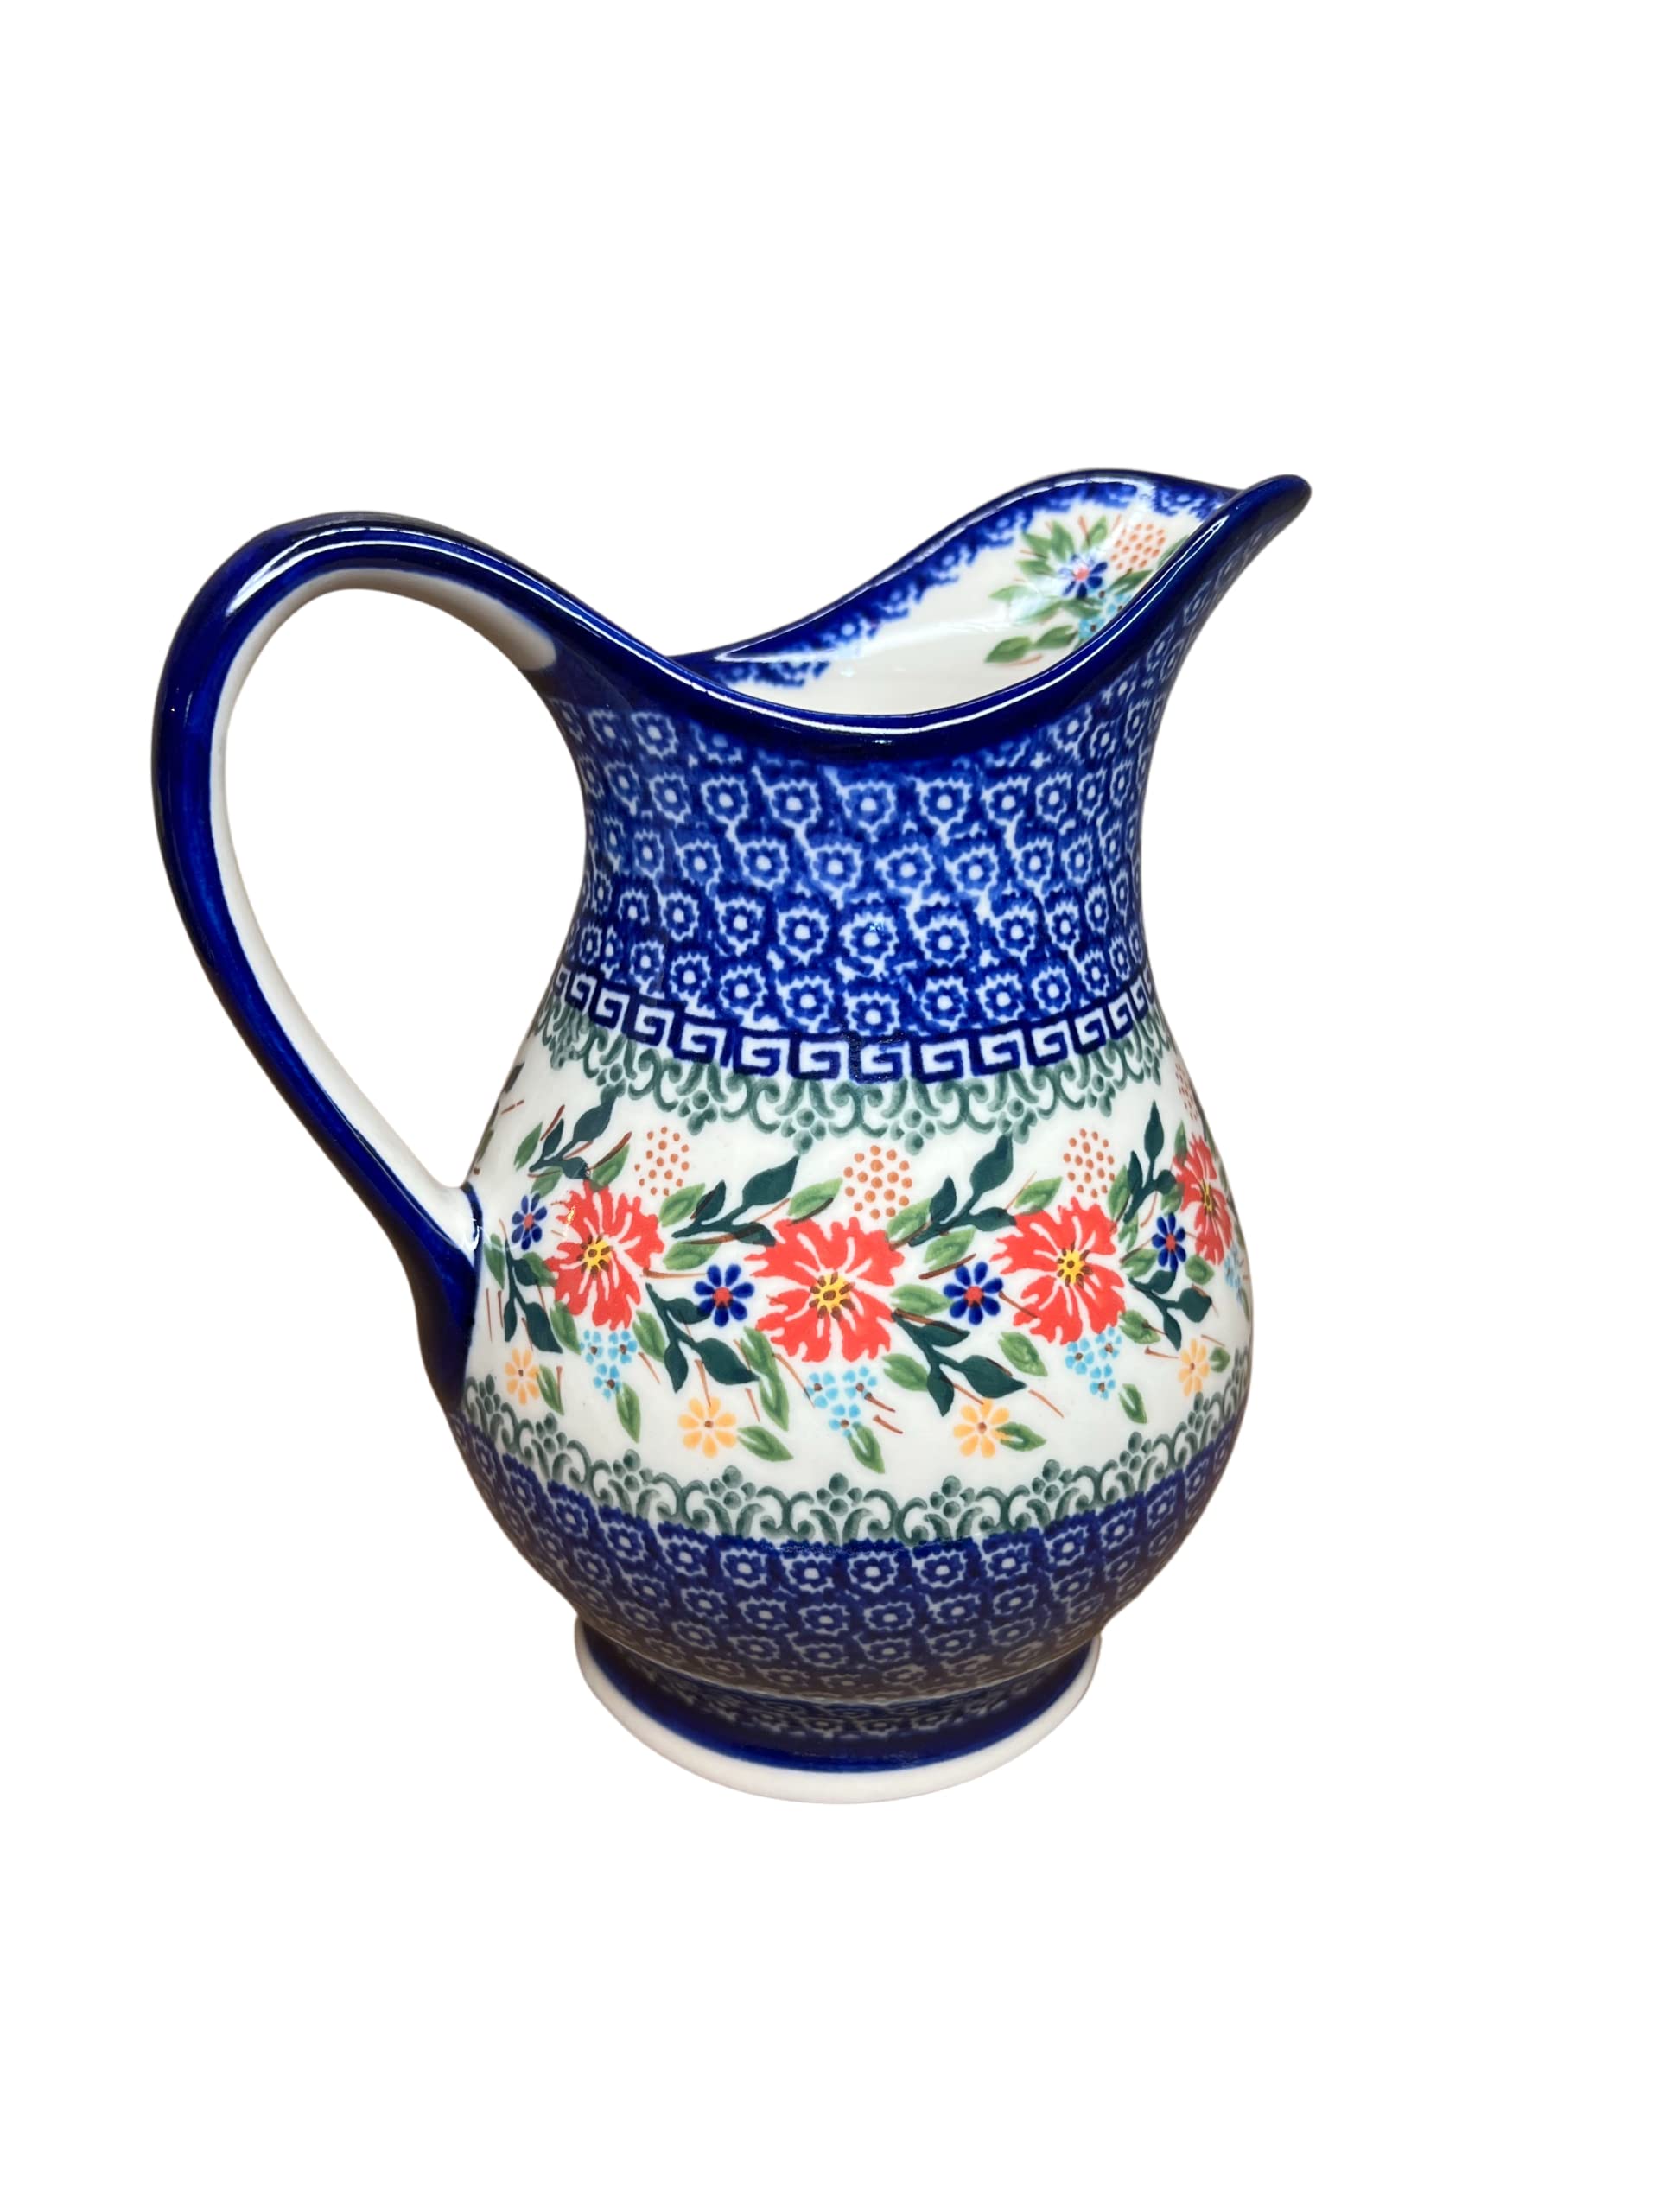 Polish Pottery 1 liter Water Pitcher- Ceramika Kalich Cornflower